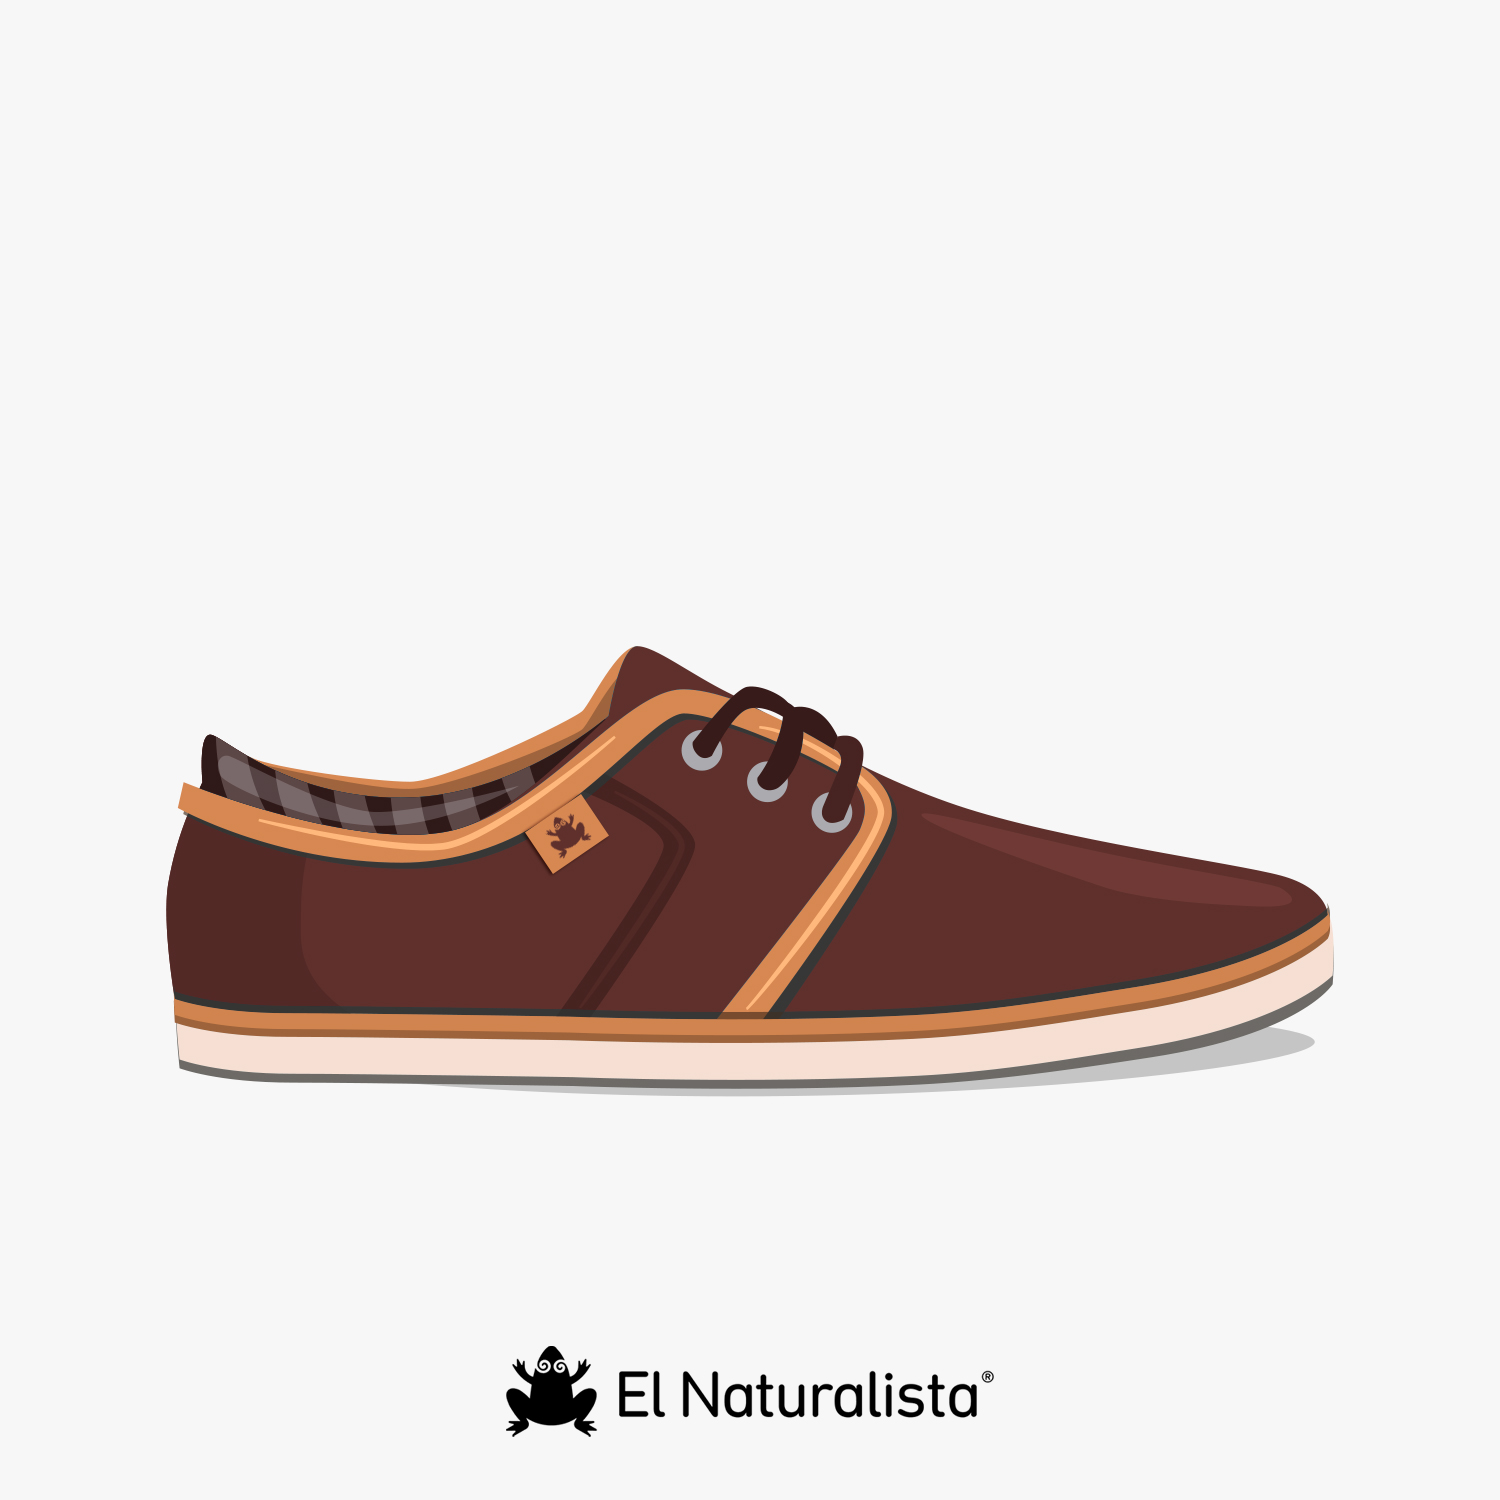 El Naturalista| New Calzado Sostenible de y Calidad para hombre y mujer Zapatos online para mujer El Naturalista Moda inspirada en la